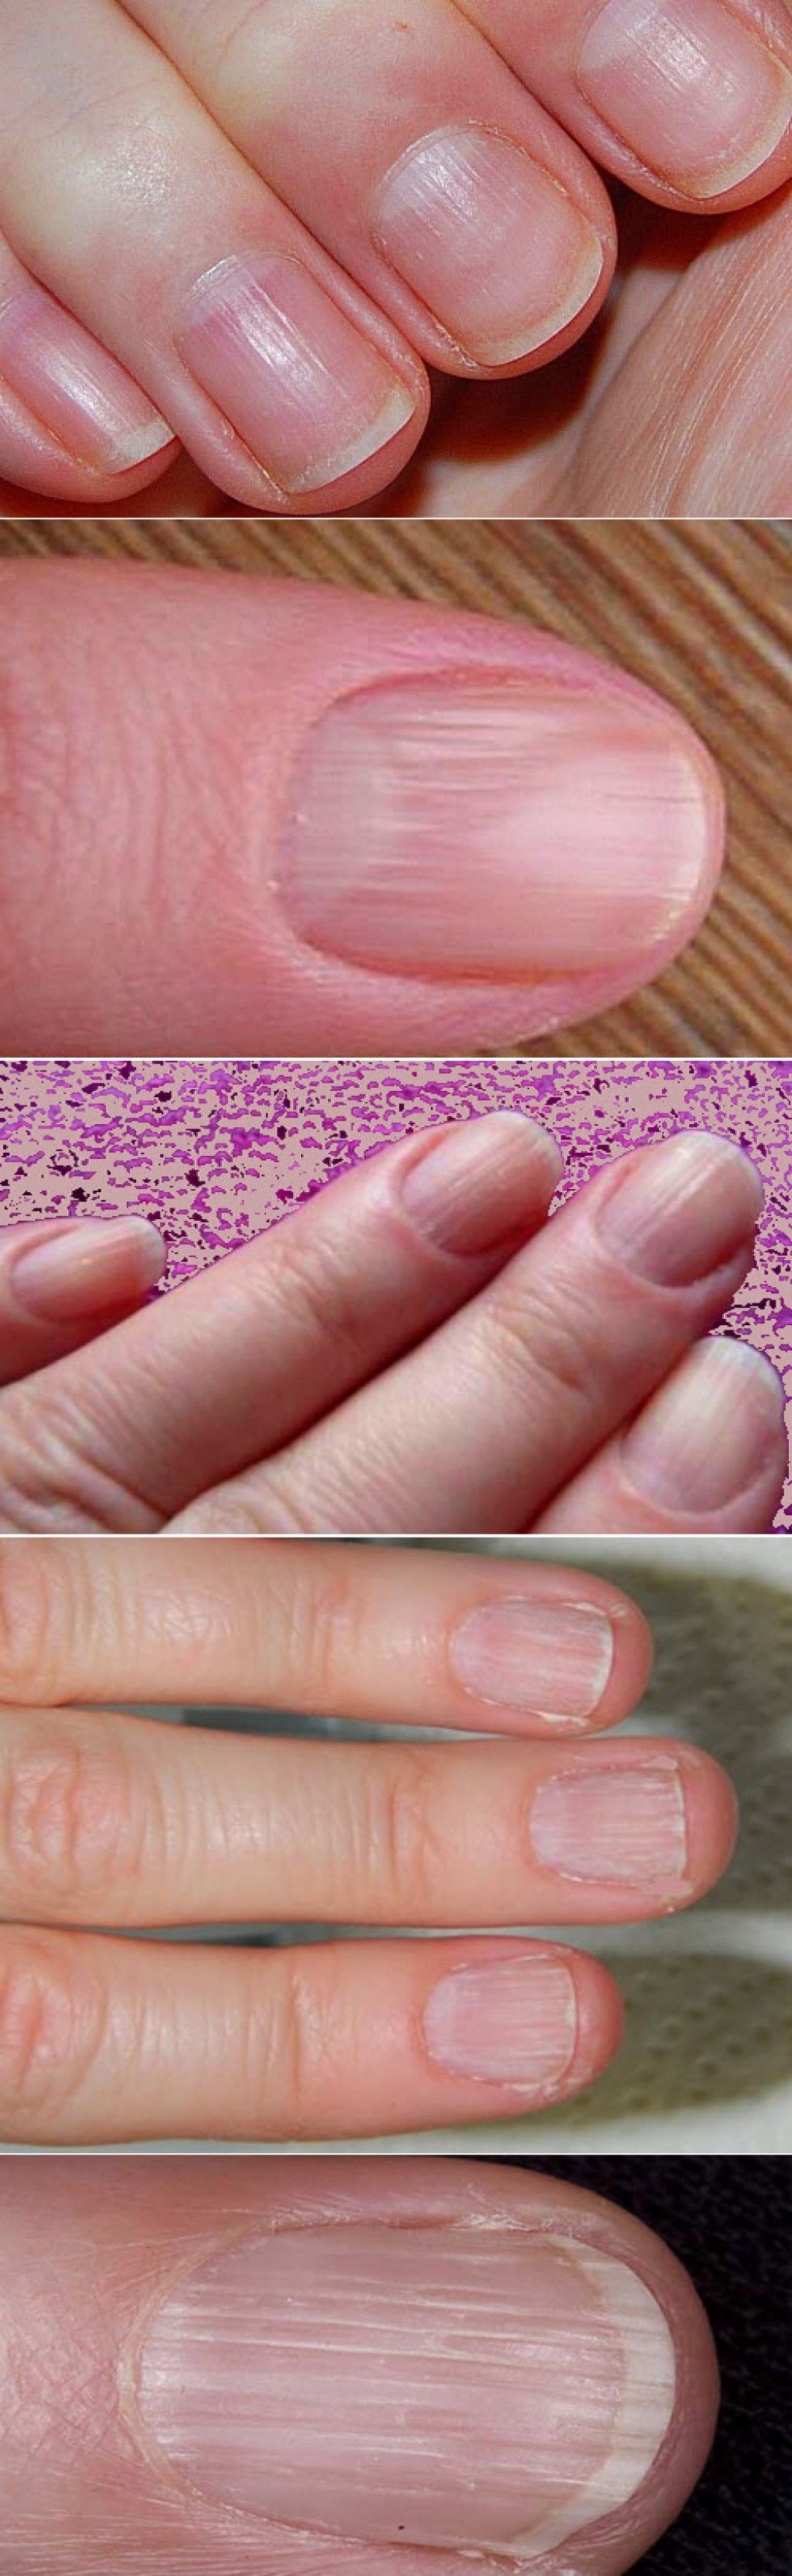 Полоски на ногтях причины вертикальные у женщин. Микотическая лейконихия. Ониходистрофия, лейконихия. Поперечные борозды бо Рейля.